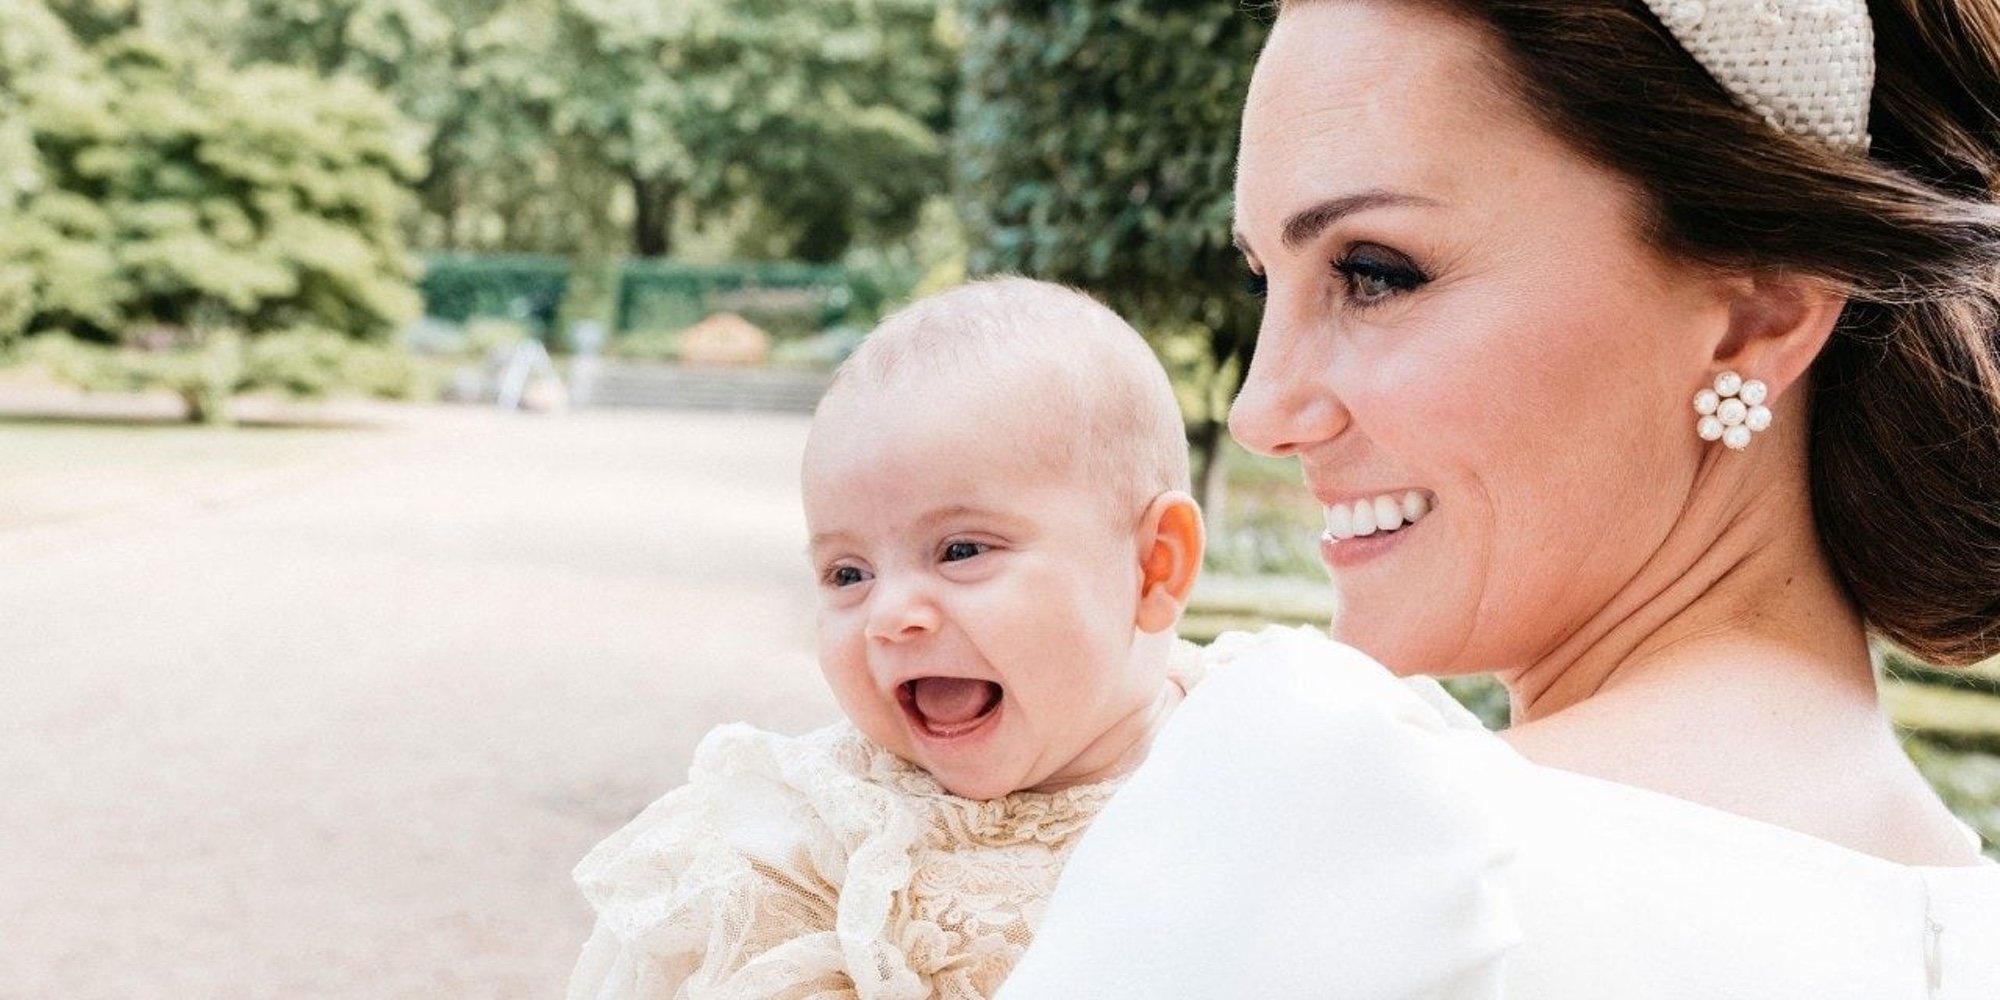 Kate Middleton revela un adorable detalle sobre el Príncipe Luis de Cambridge